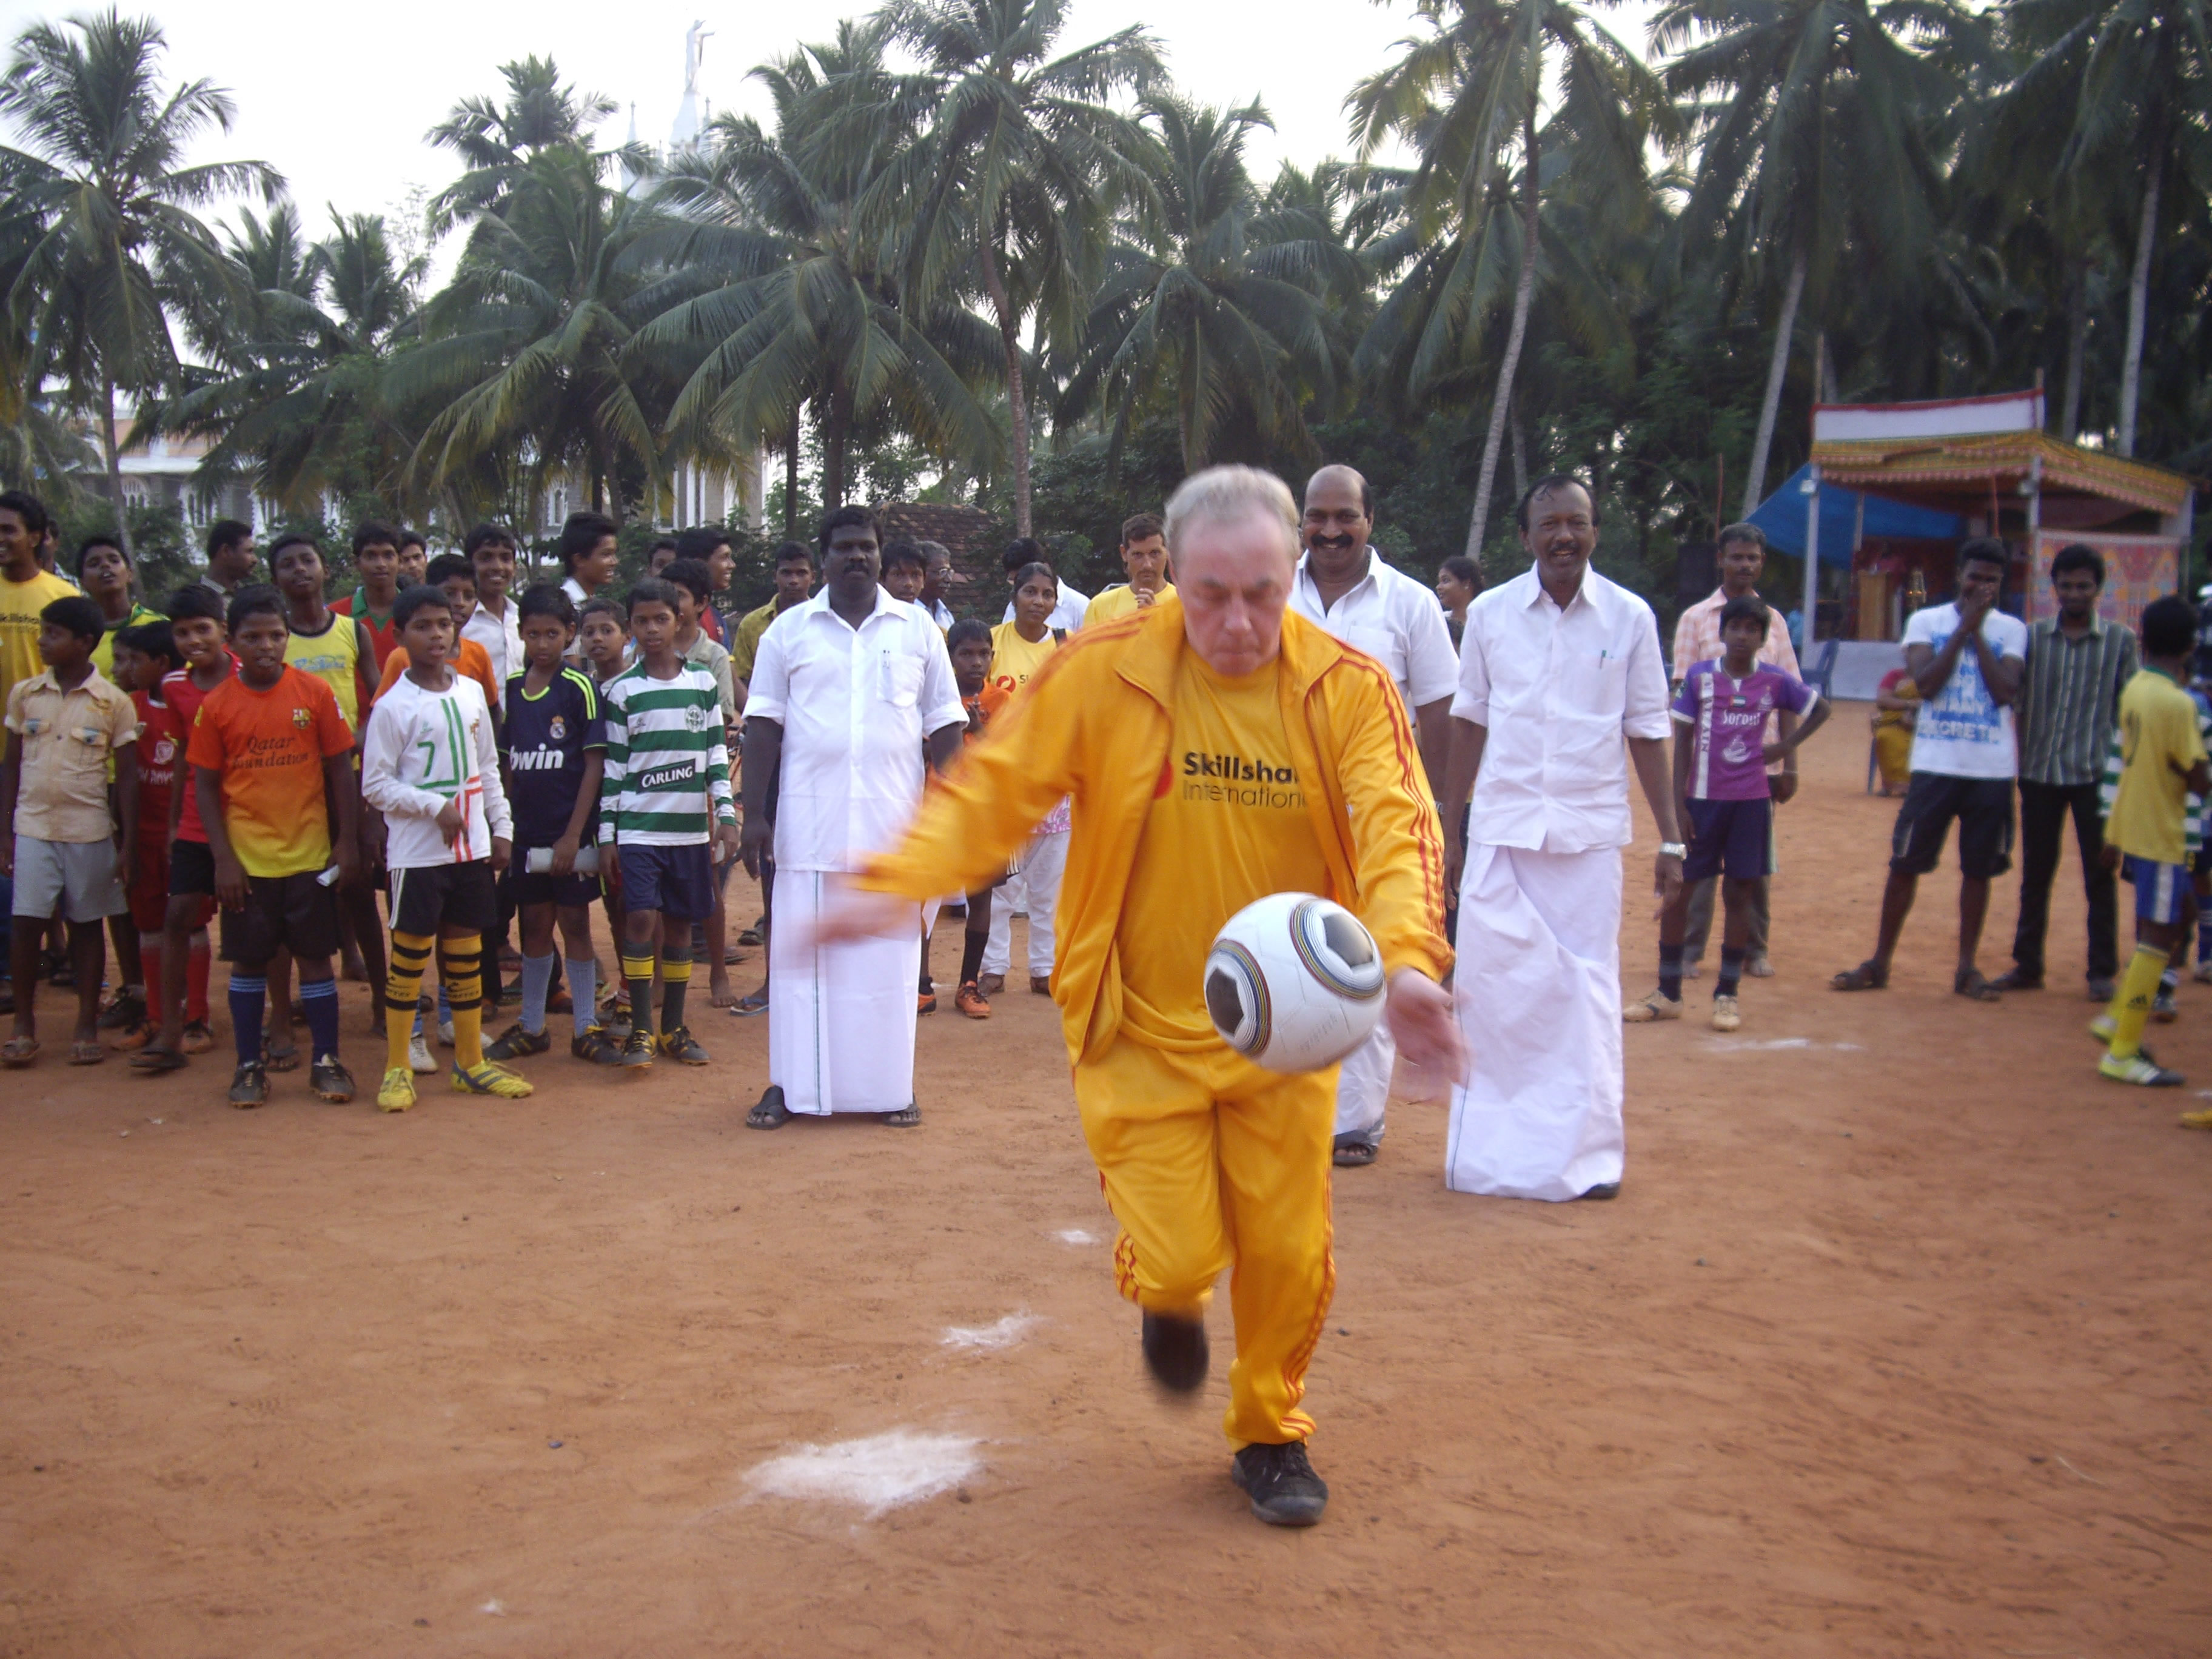 Cliff Allum kicks ball at CFH India launch